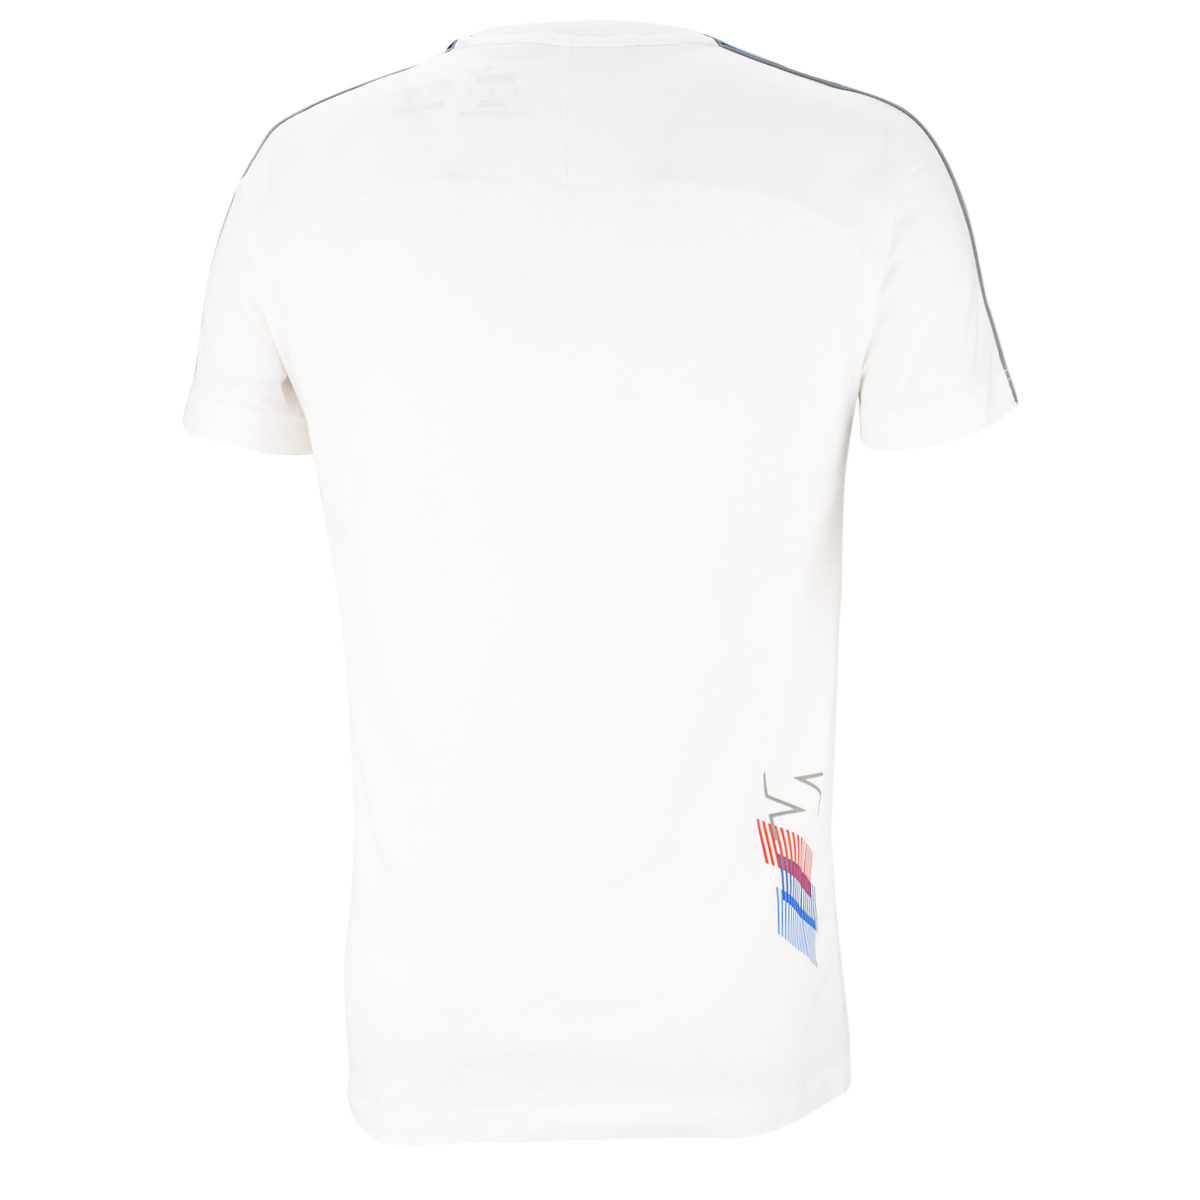 Comprar Camiseta BMW Motorsport MT7 Blanca. Disponible en blanco, hombre